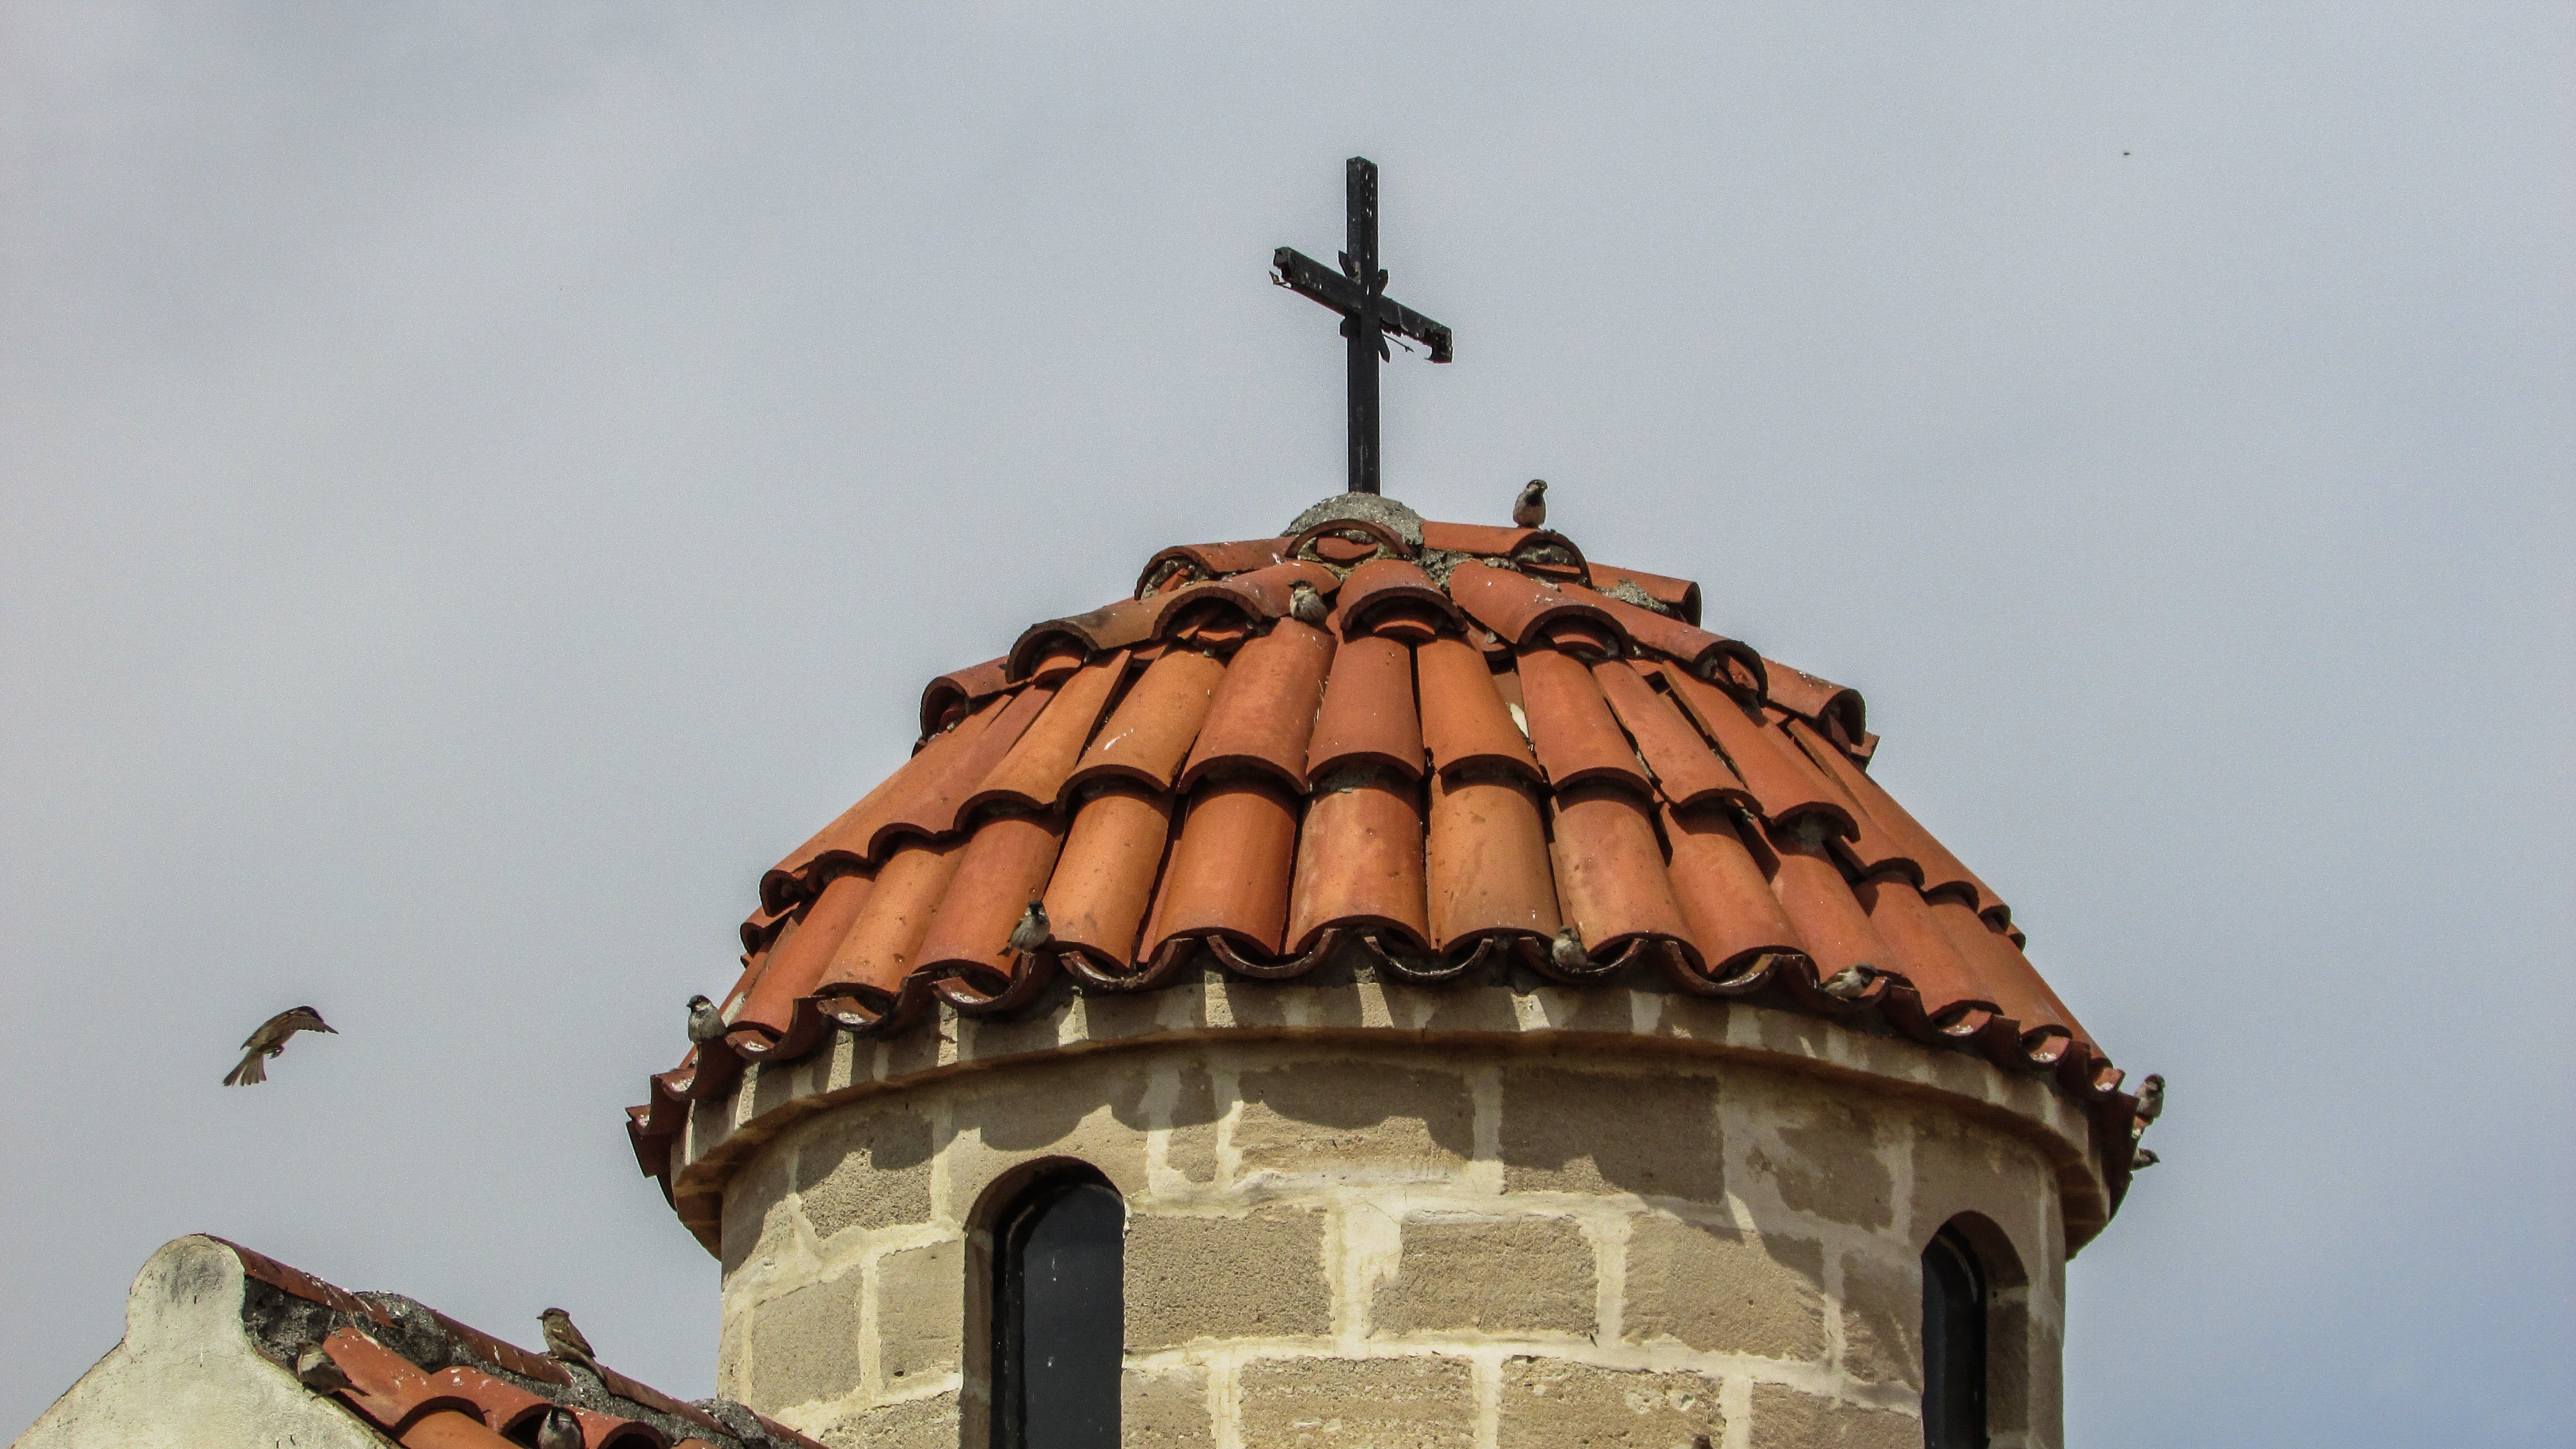 black cross on brown tower roof